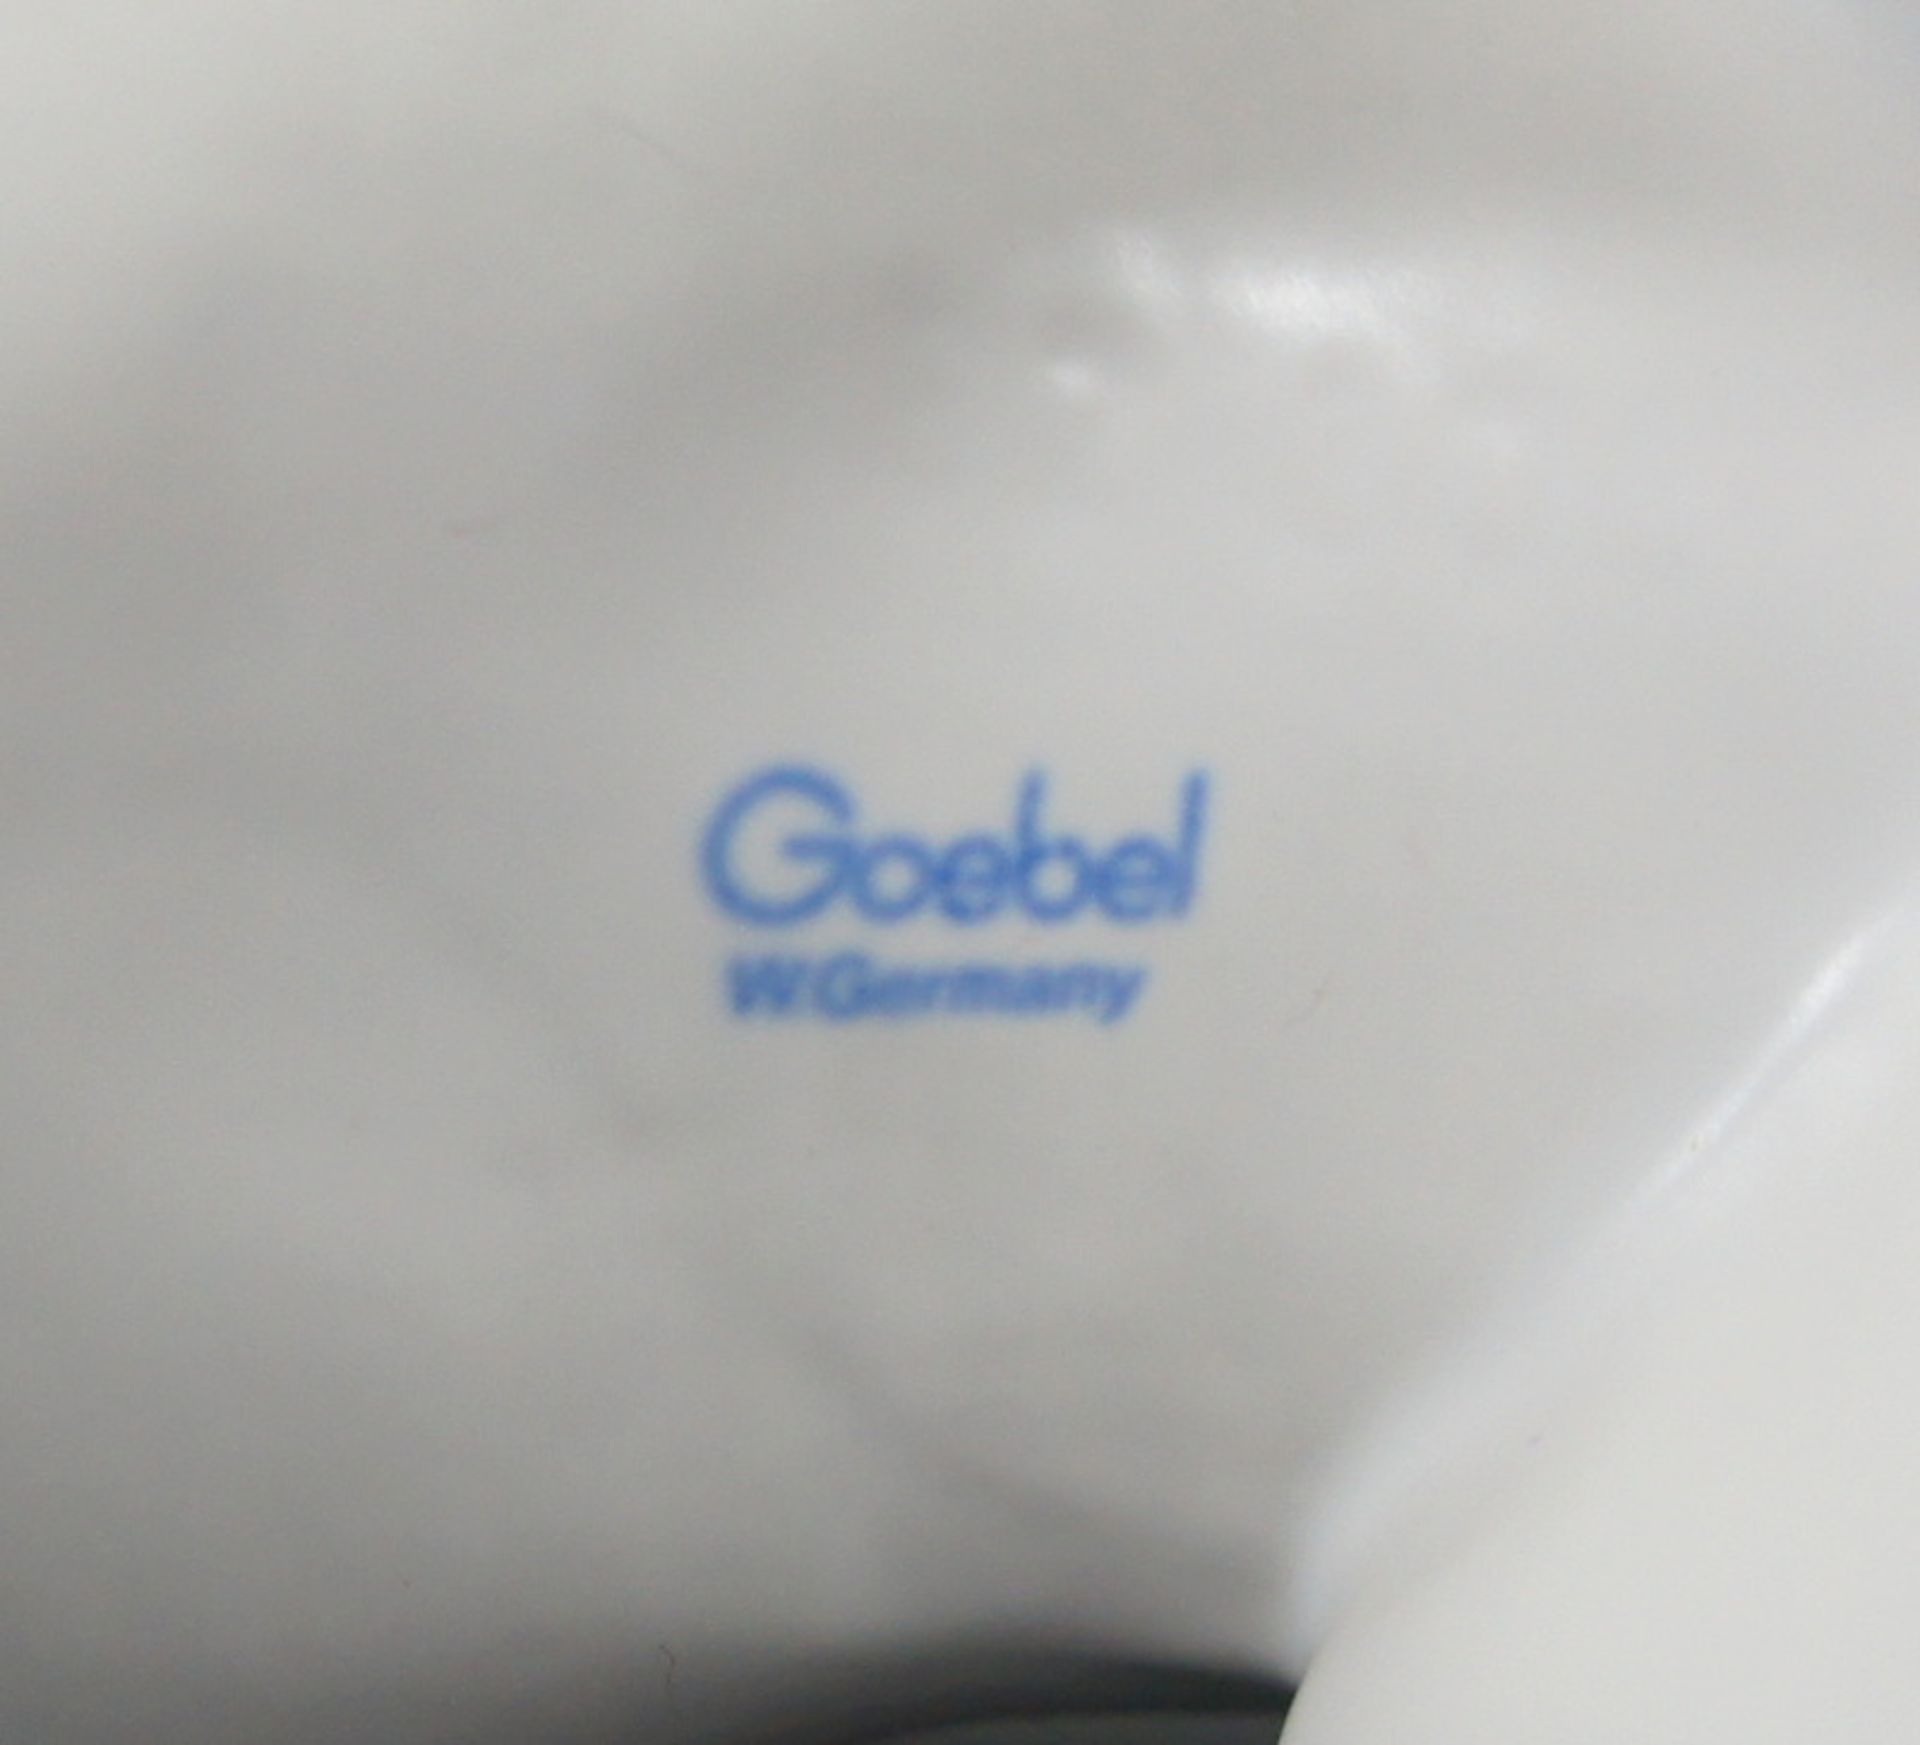 Goebel, SteigerPorzellan, am Boden mit blauer "Goebel Germany" Marke. Zurückweichendes Pferd mit - Bild 3 aus 3